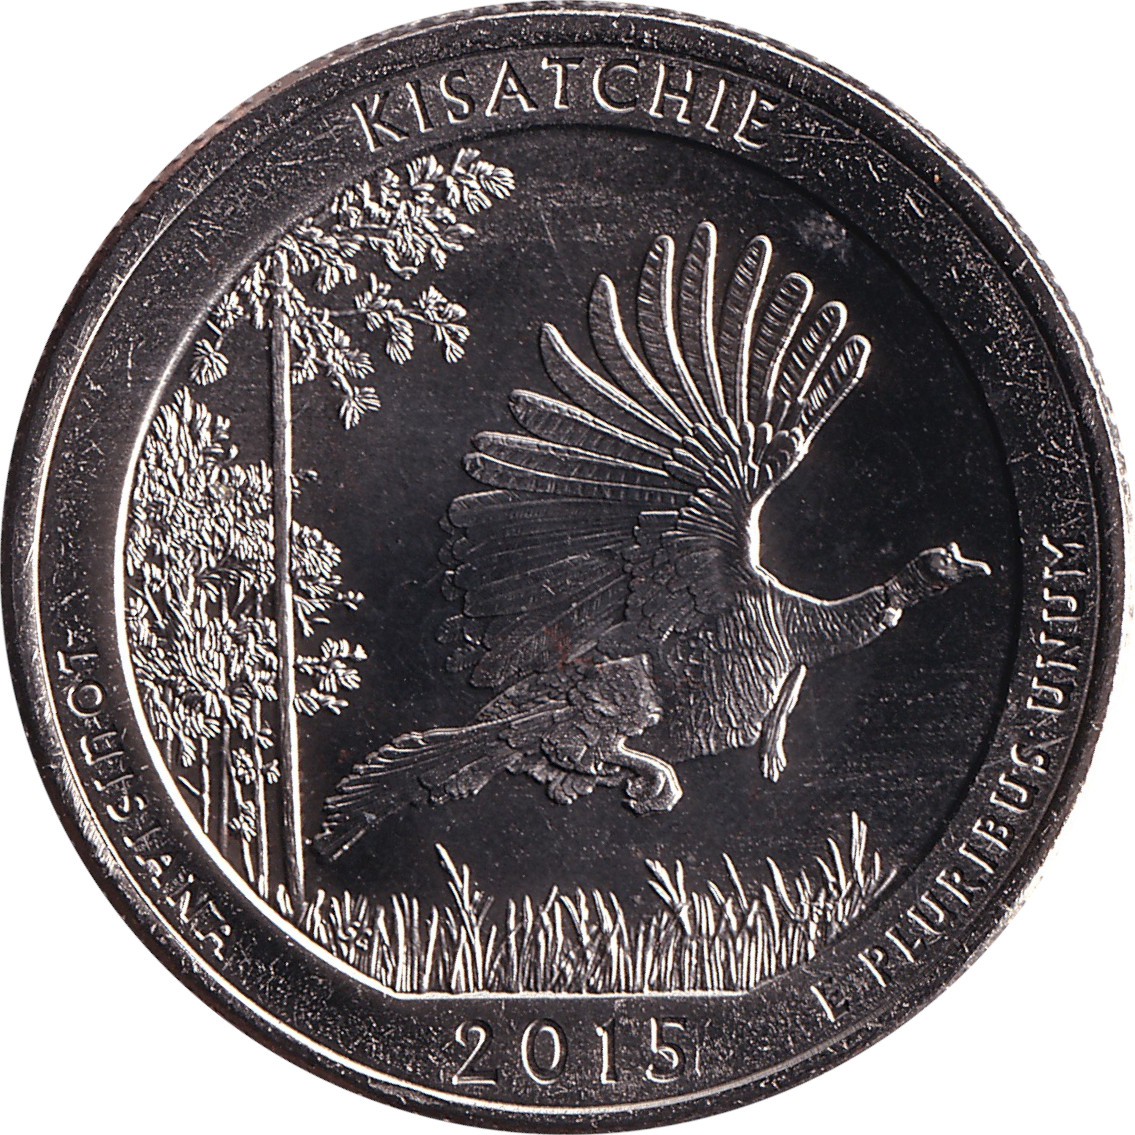 1/4 dollar - Louisiana - Kisatchie